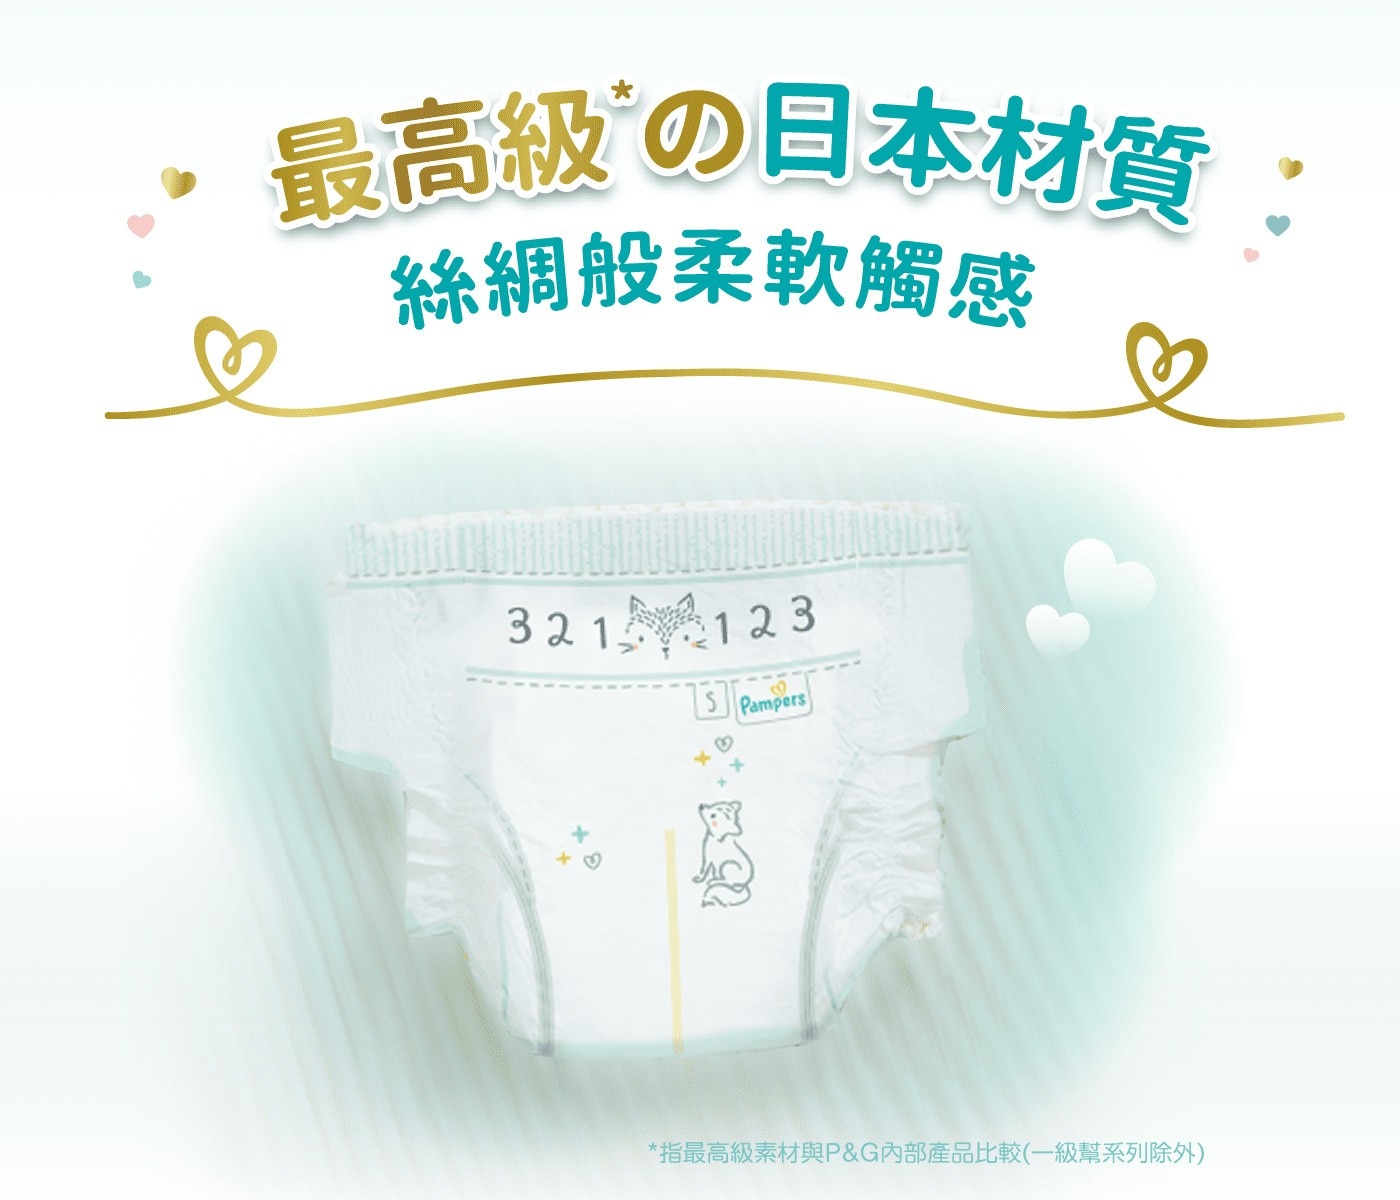 幫寶適一級幫XL號最高級的日本材質絲綢般柔軟觸感